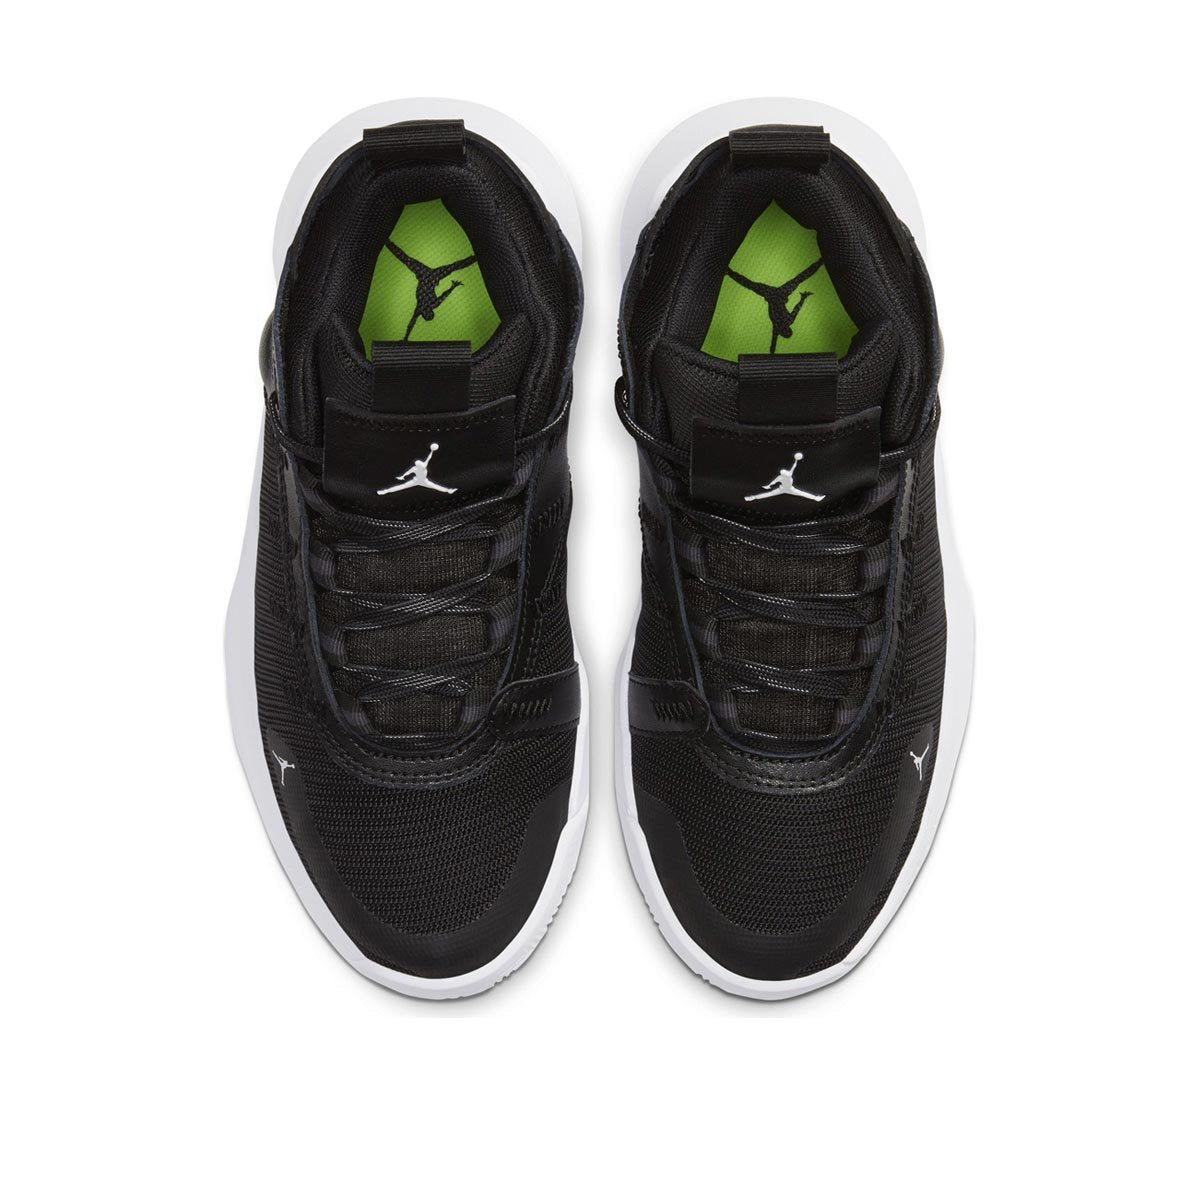 Найк тераскейп. Джорданы 2020. Nike Jordan 2020. Jordan Jumpman 2020 черные.